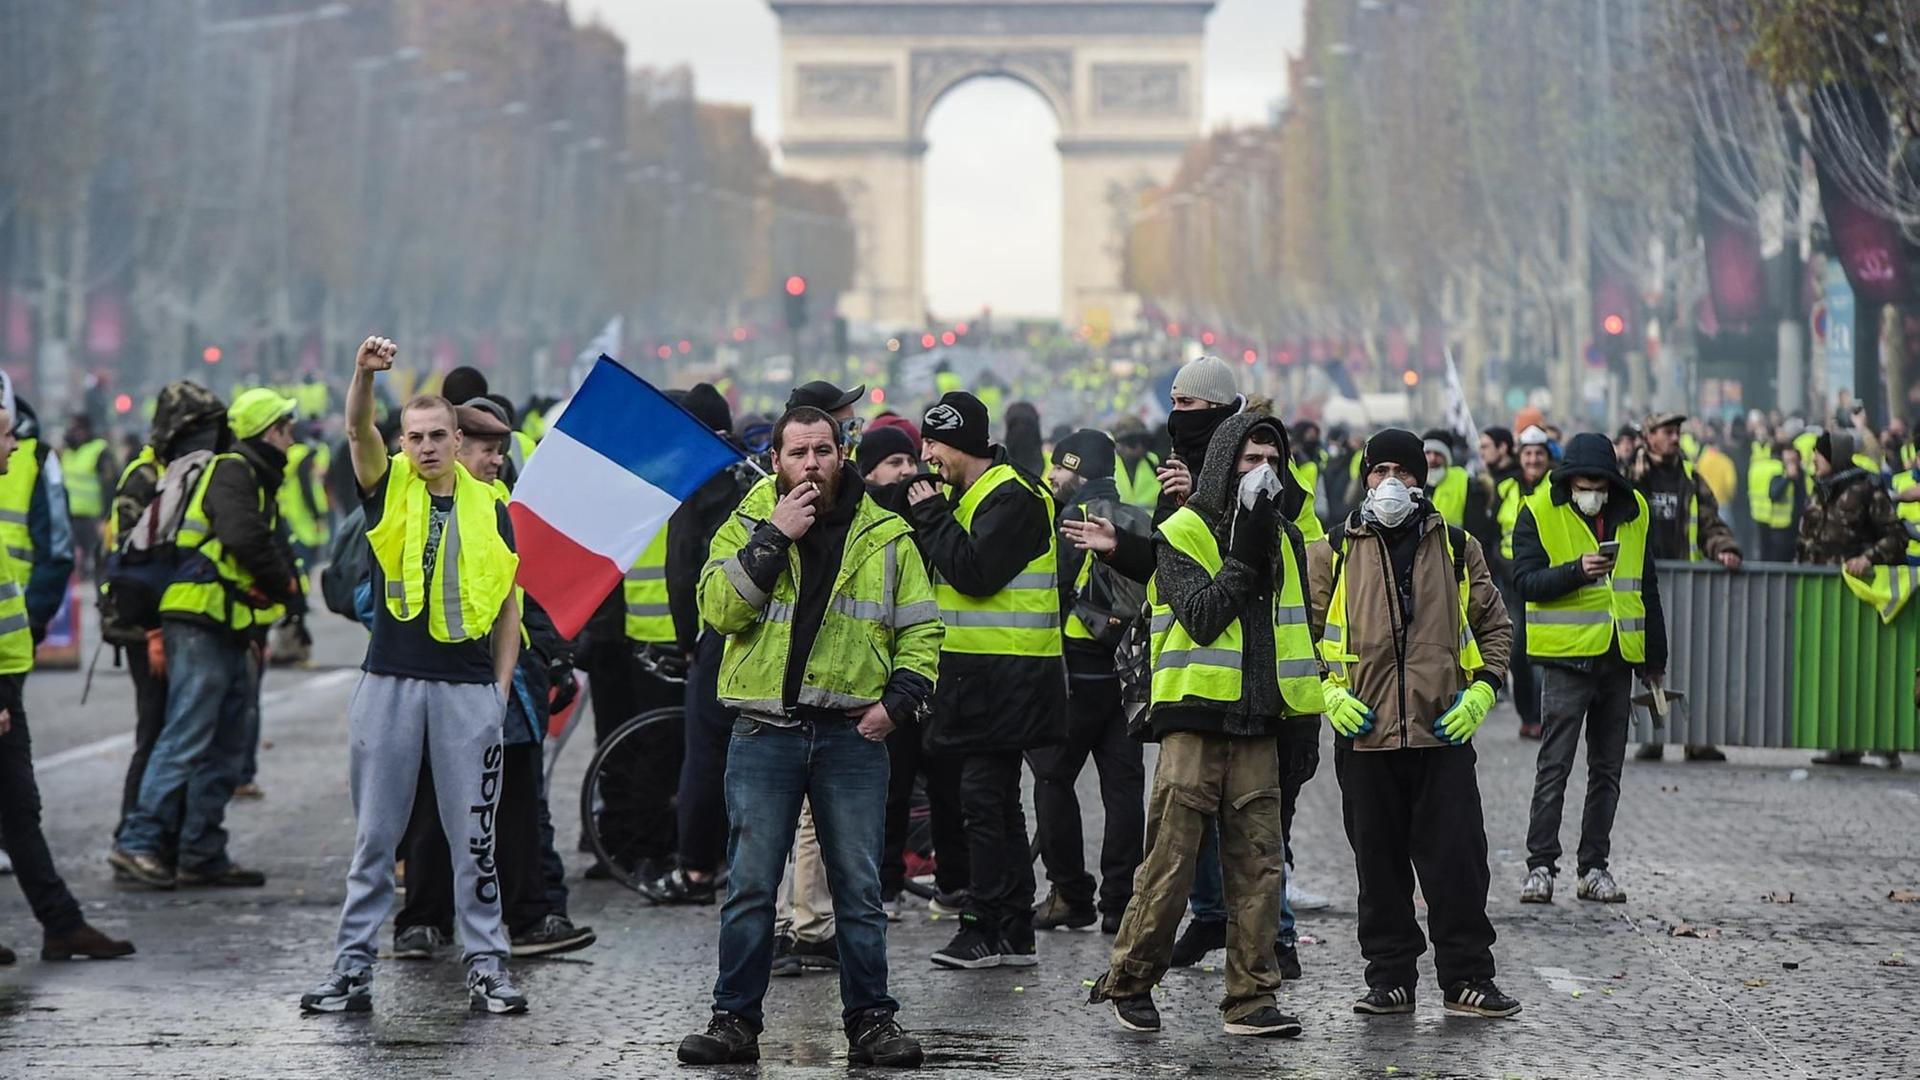 Manifestations en France – Macron réagit à la colère des gilets jaunes